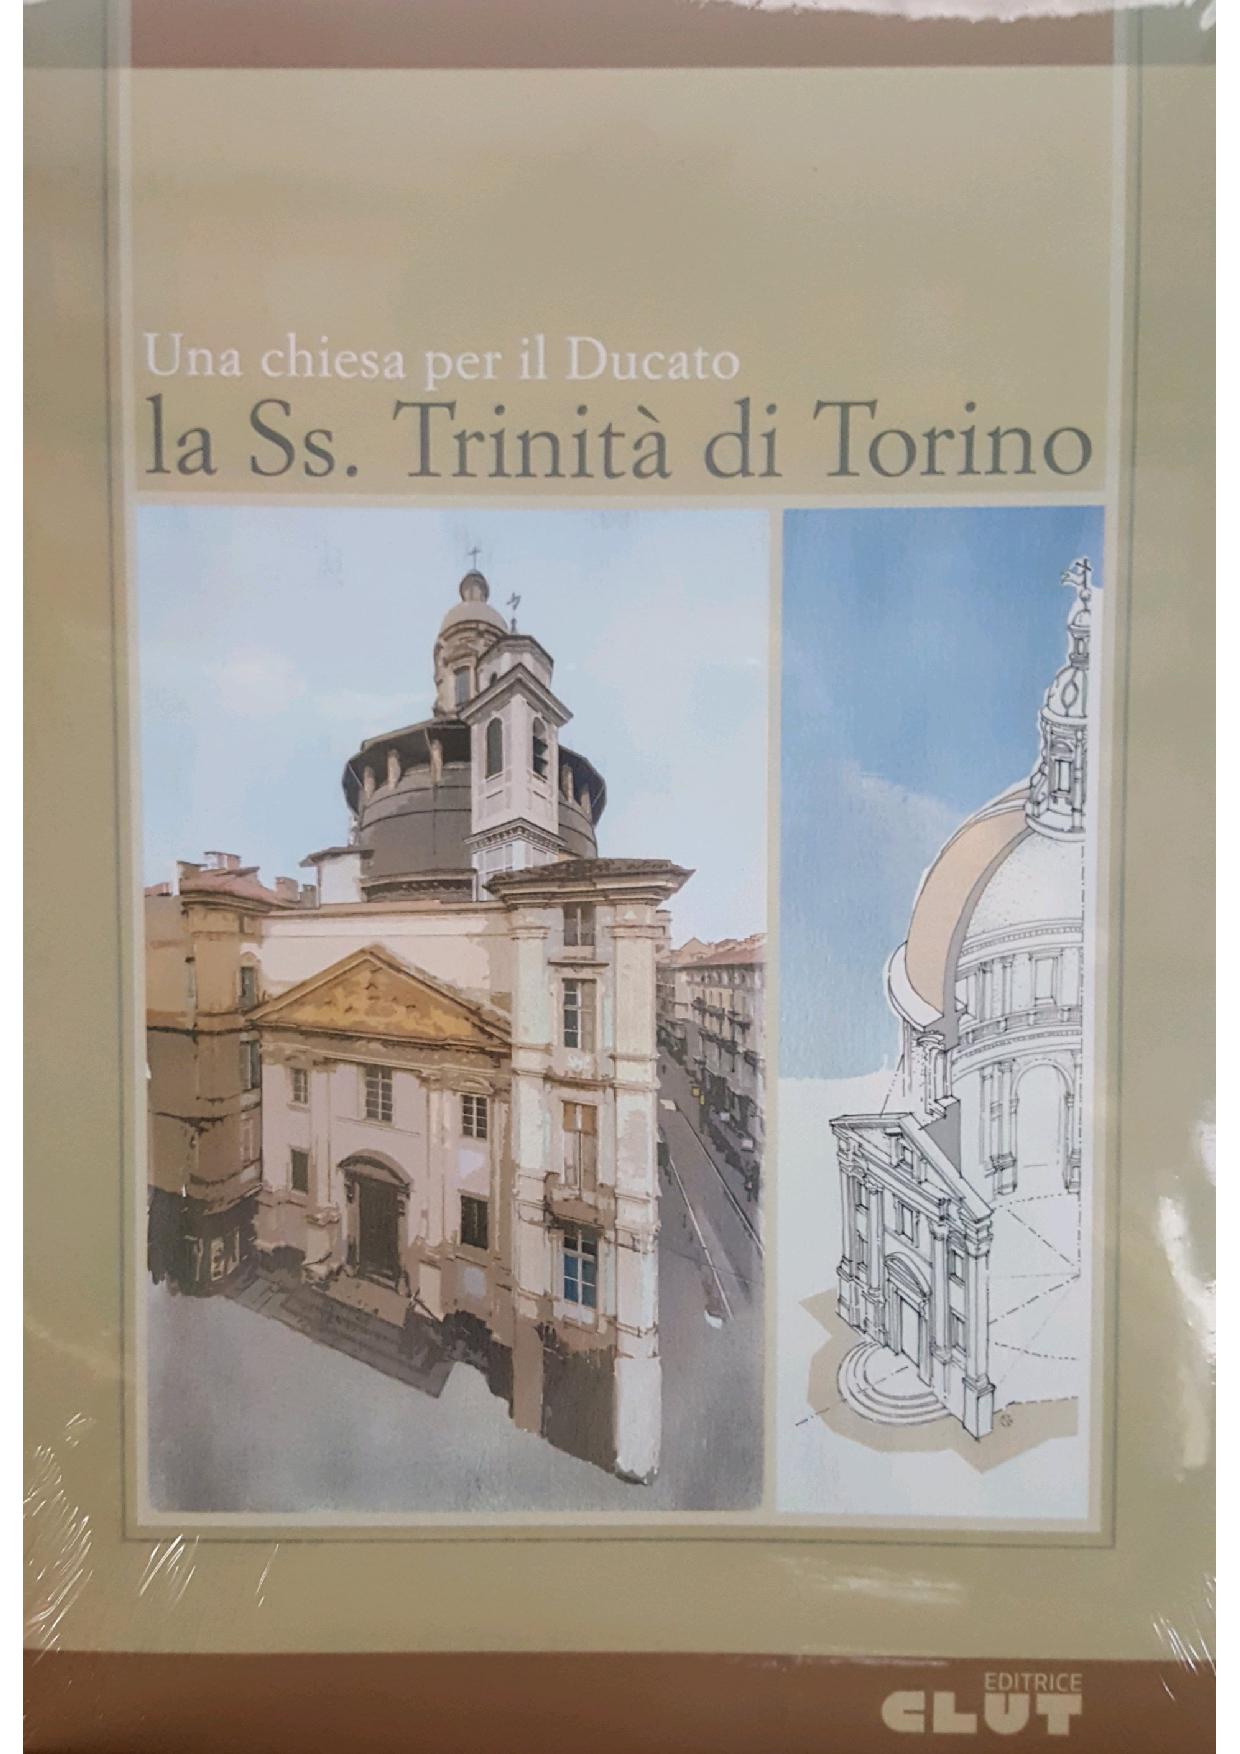 Una chiesa per il ducato - La Ss. Trinità di Torino 